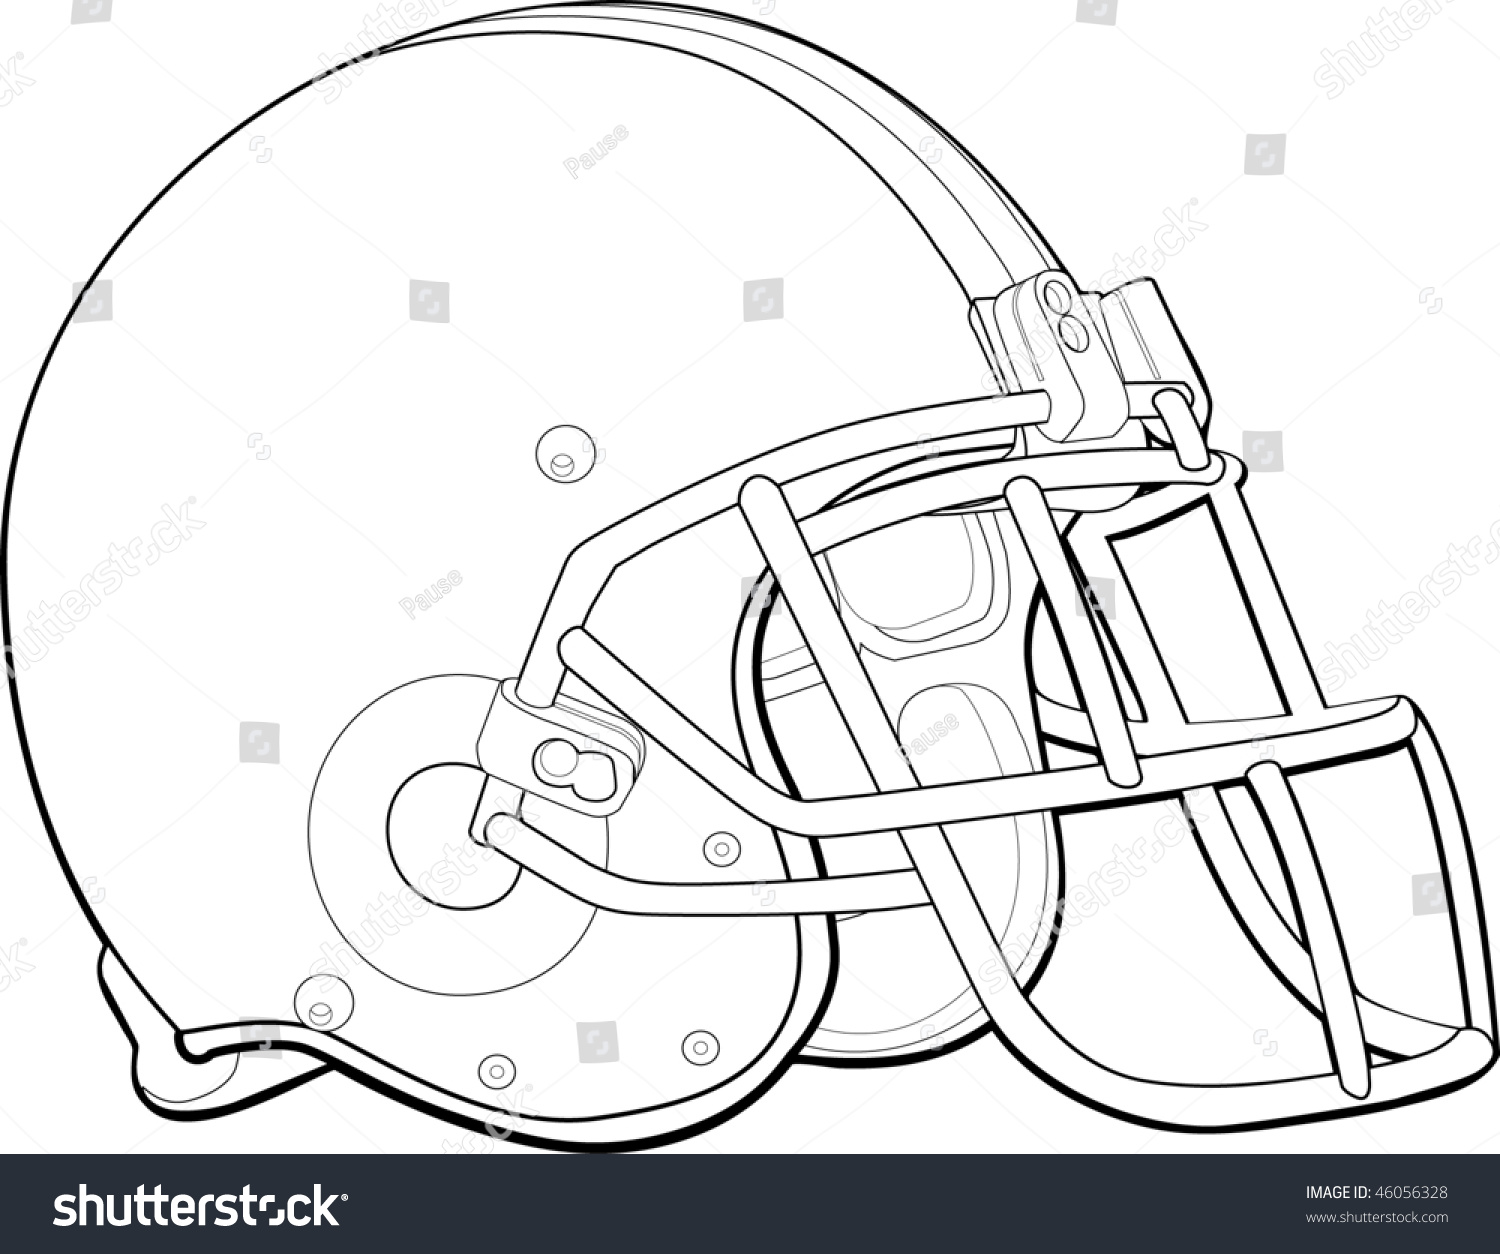 Helmet Football Team Outline Stock Vector 46056328 - Shutterstock